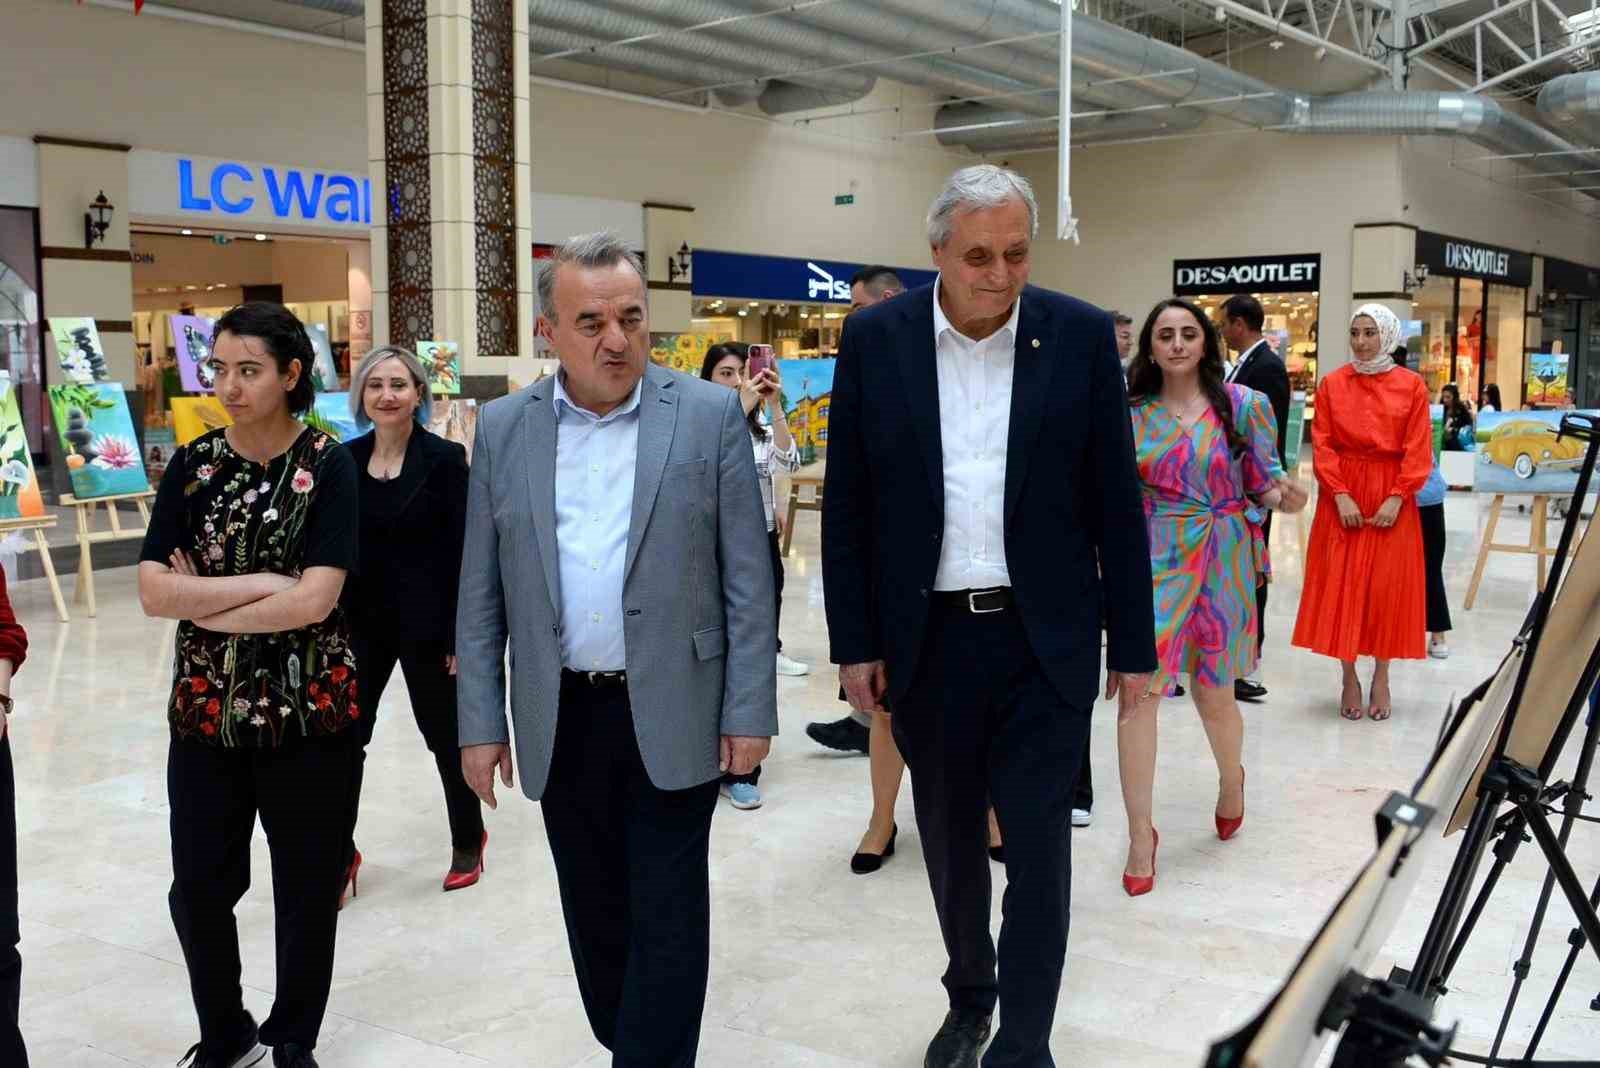 Başkan Bakkalcıoğlu resim sergisi açılışına katıldı